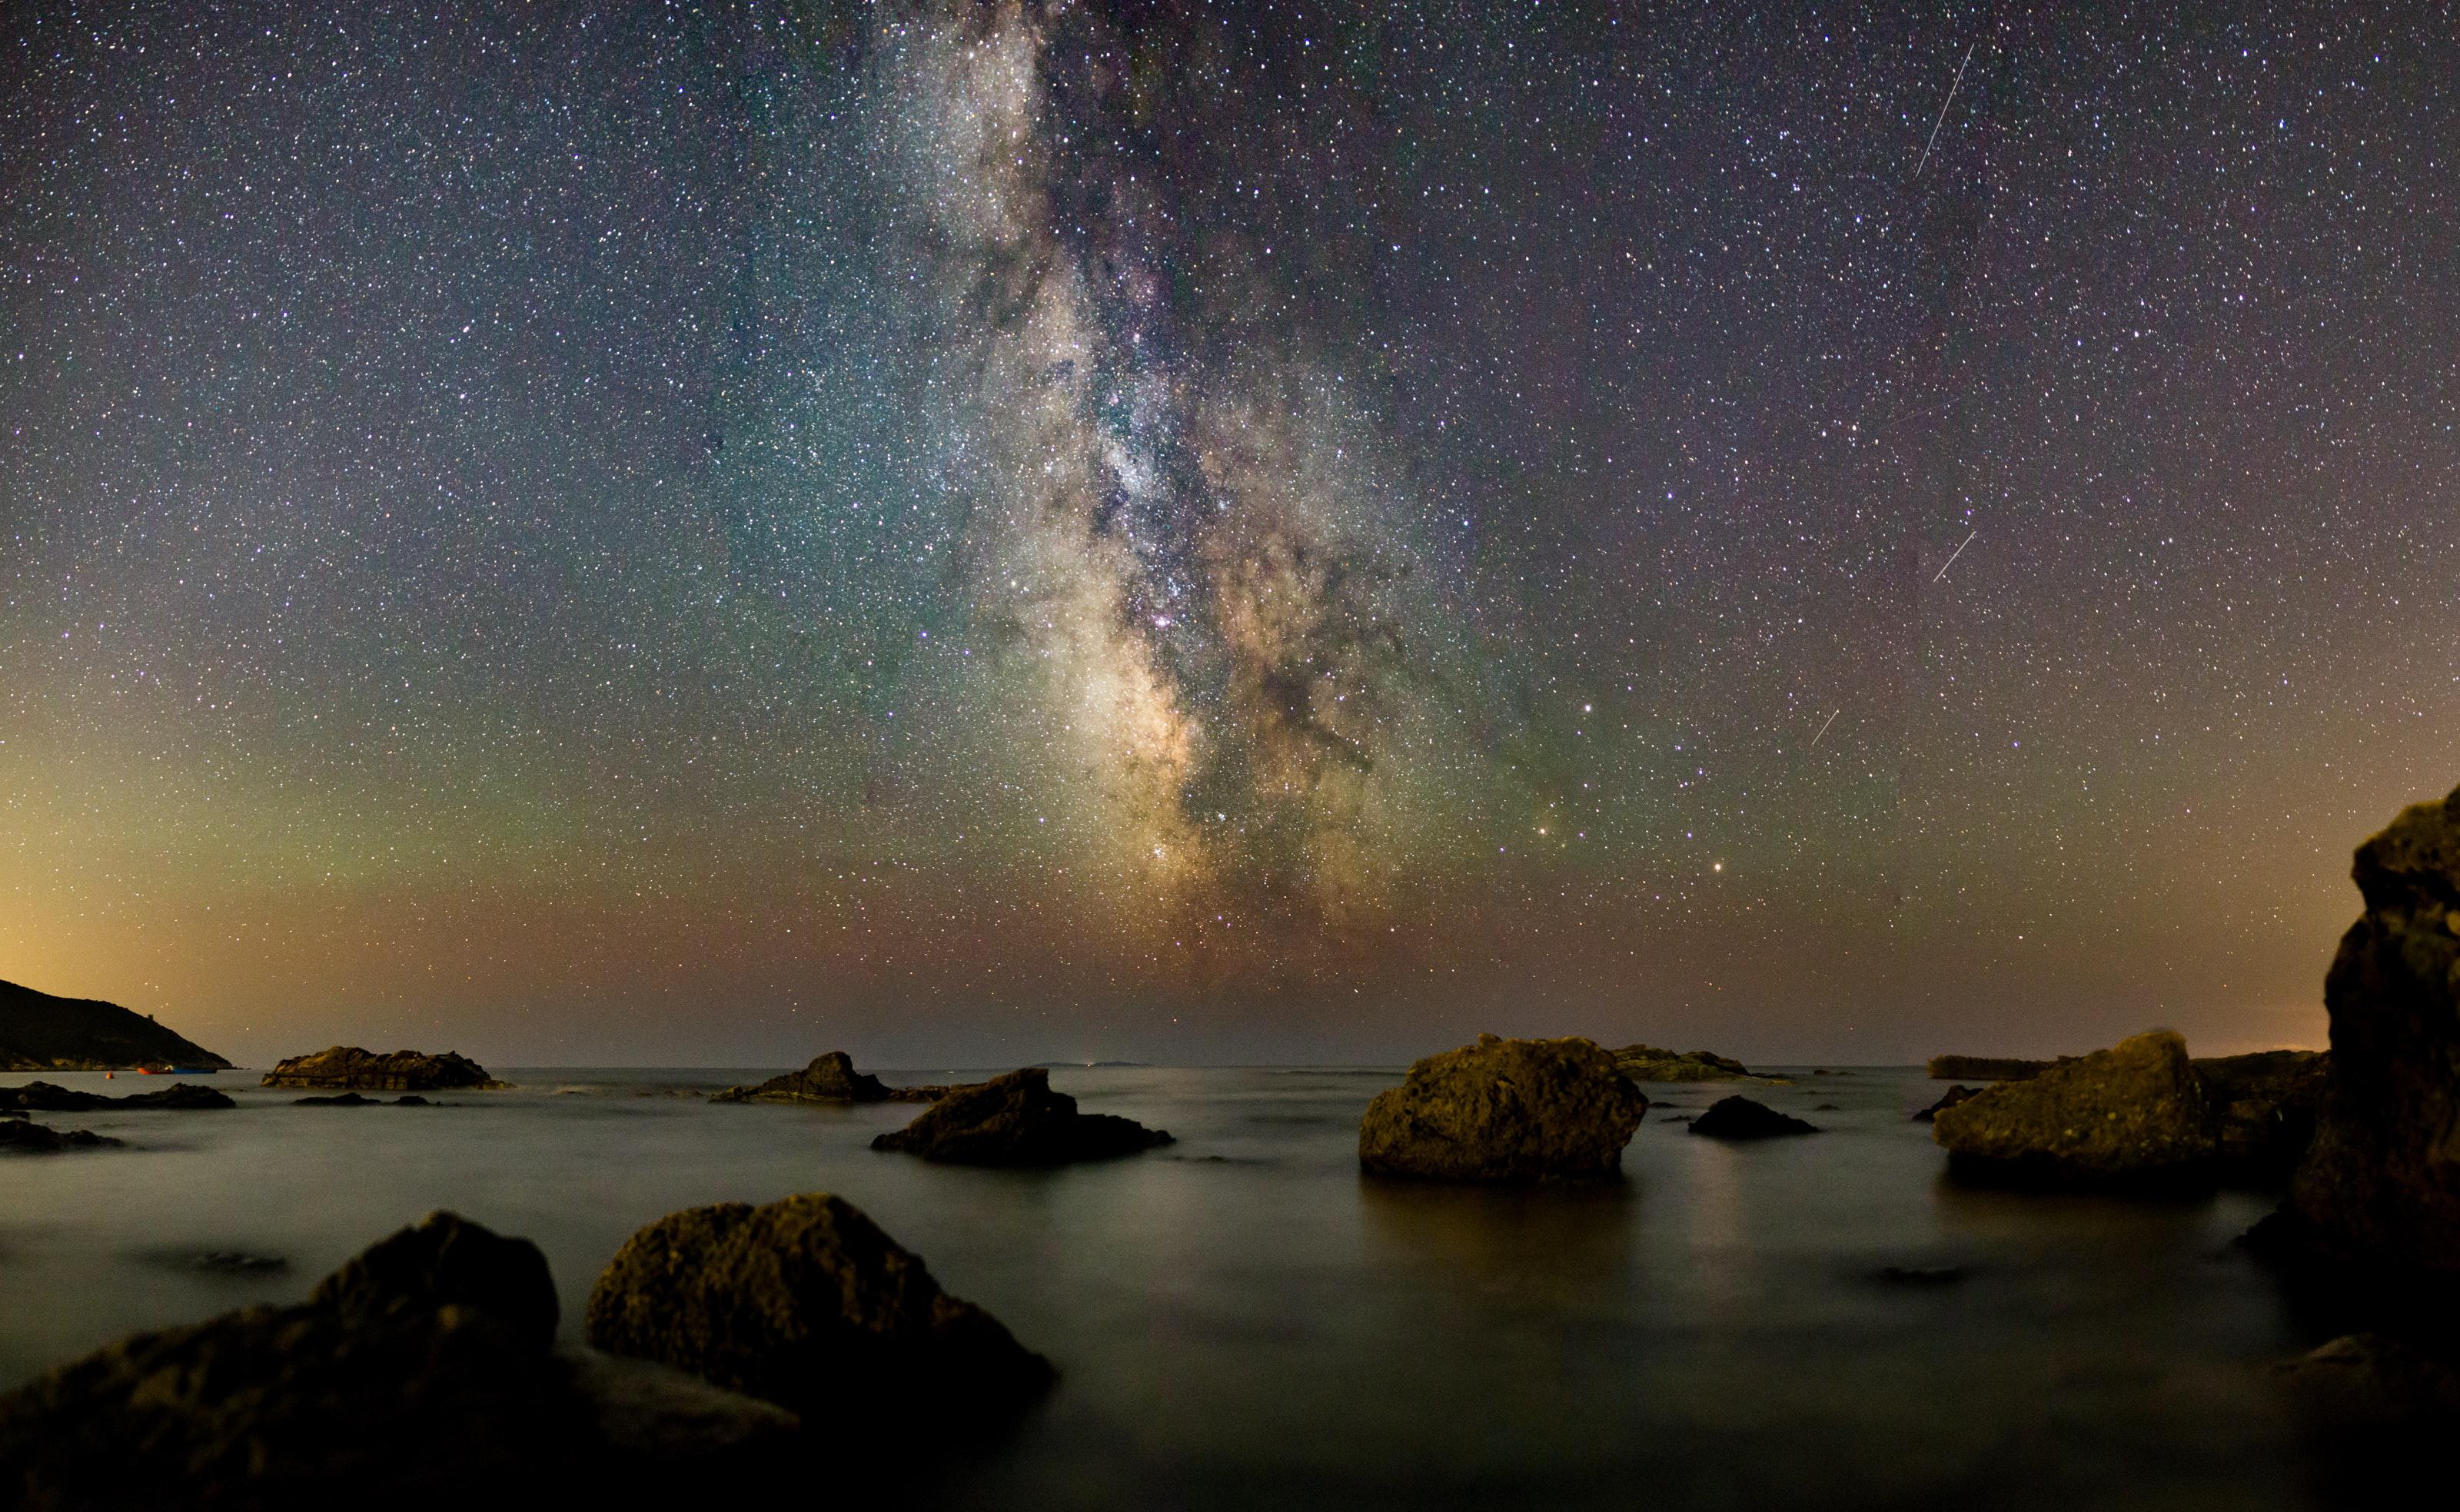 Photographie de rochers dans l'eau sous un grand ciel rempli d'étoiles et montrant la Voie lactée.